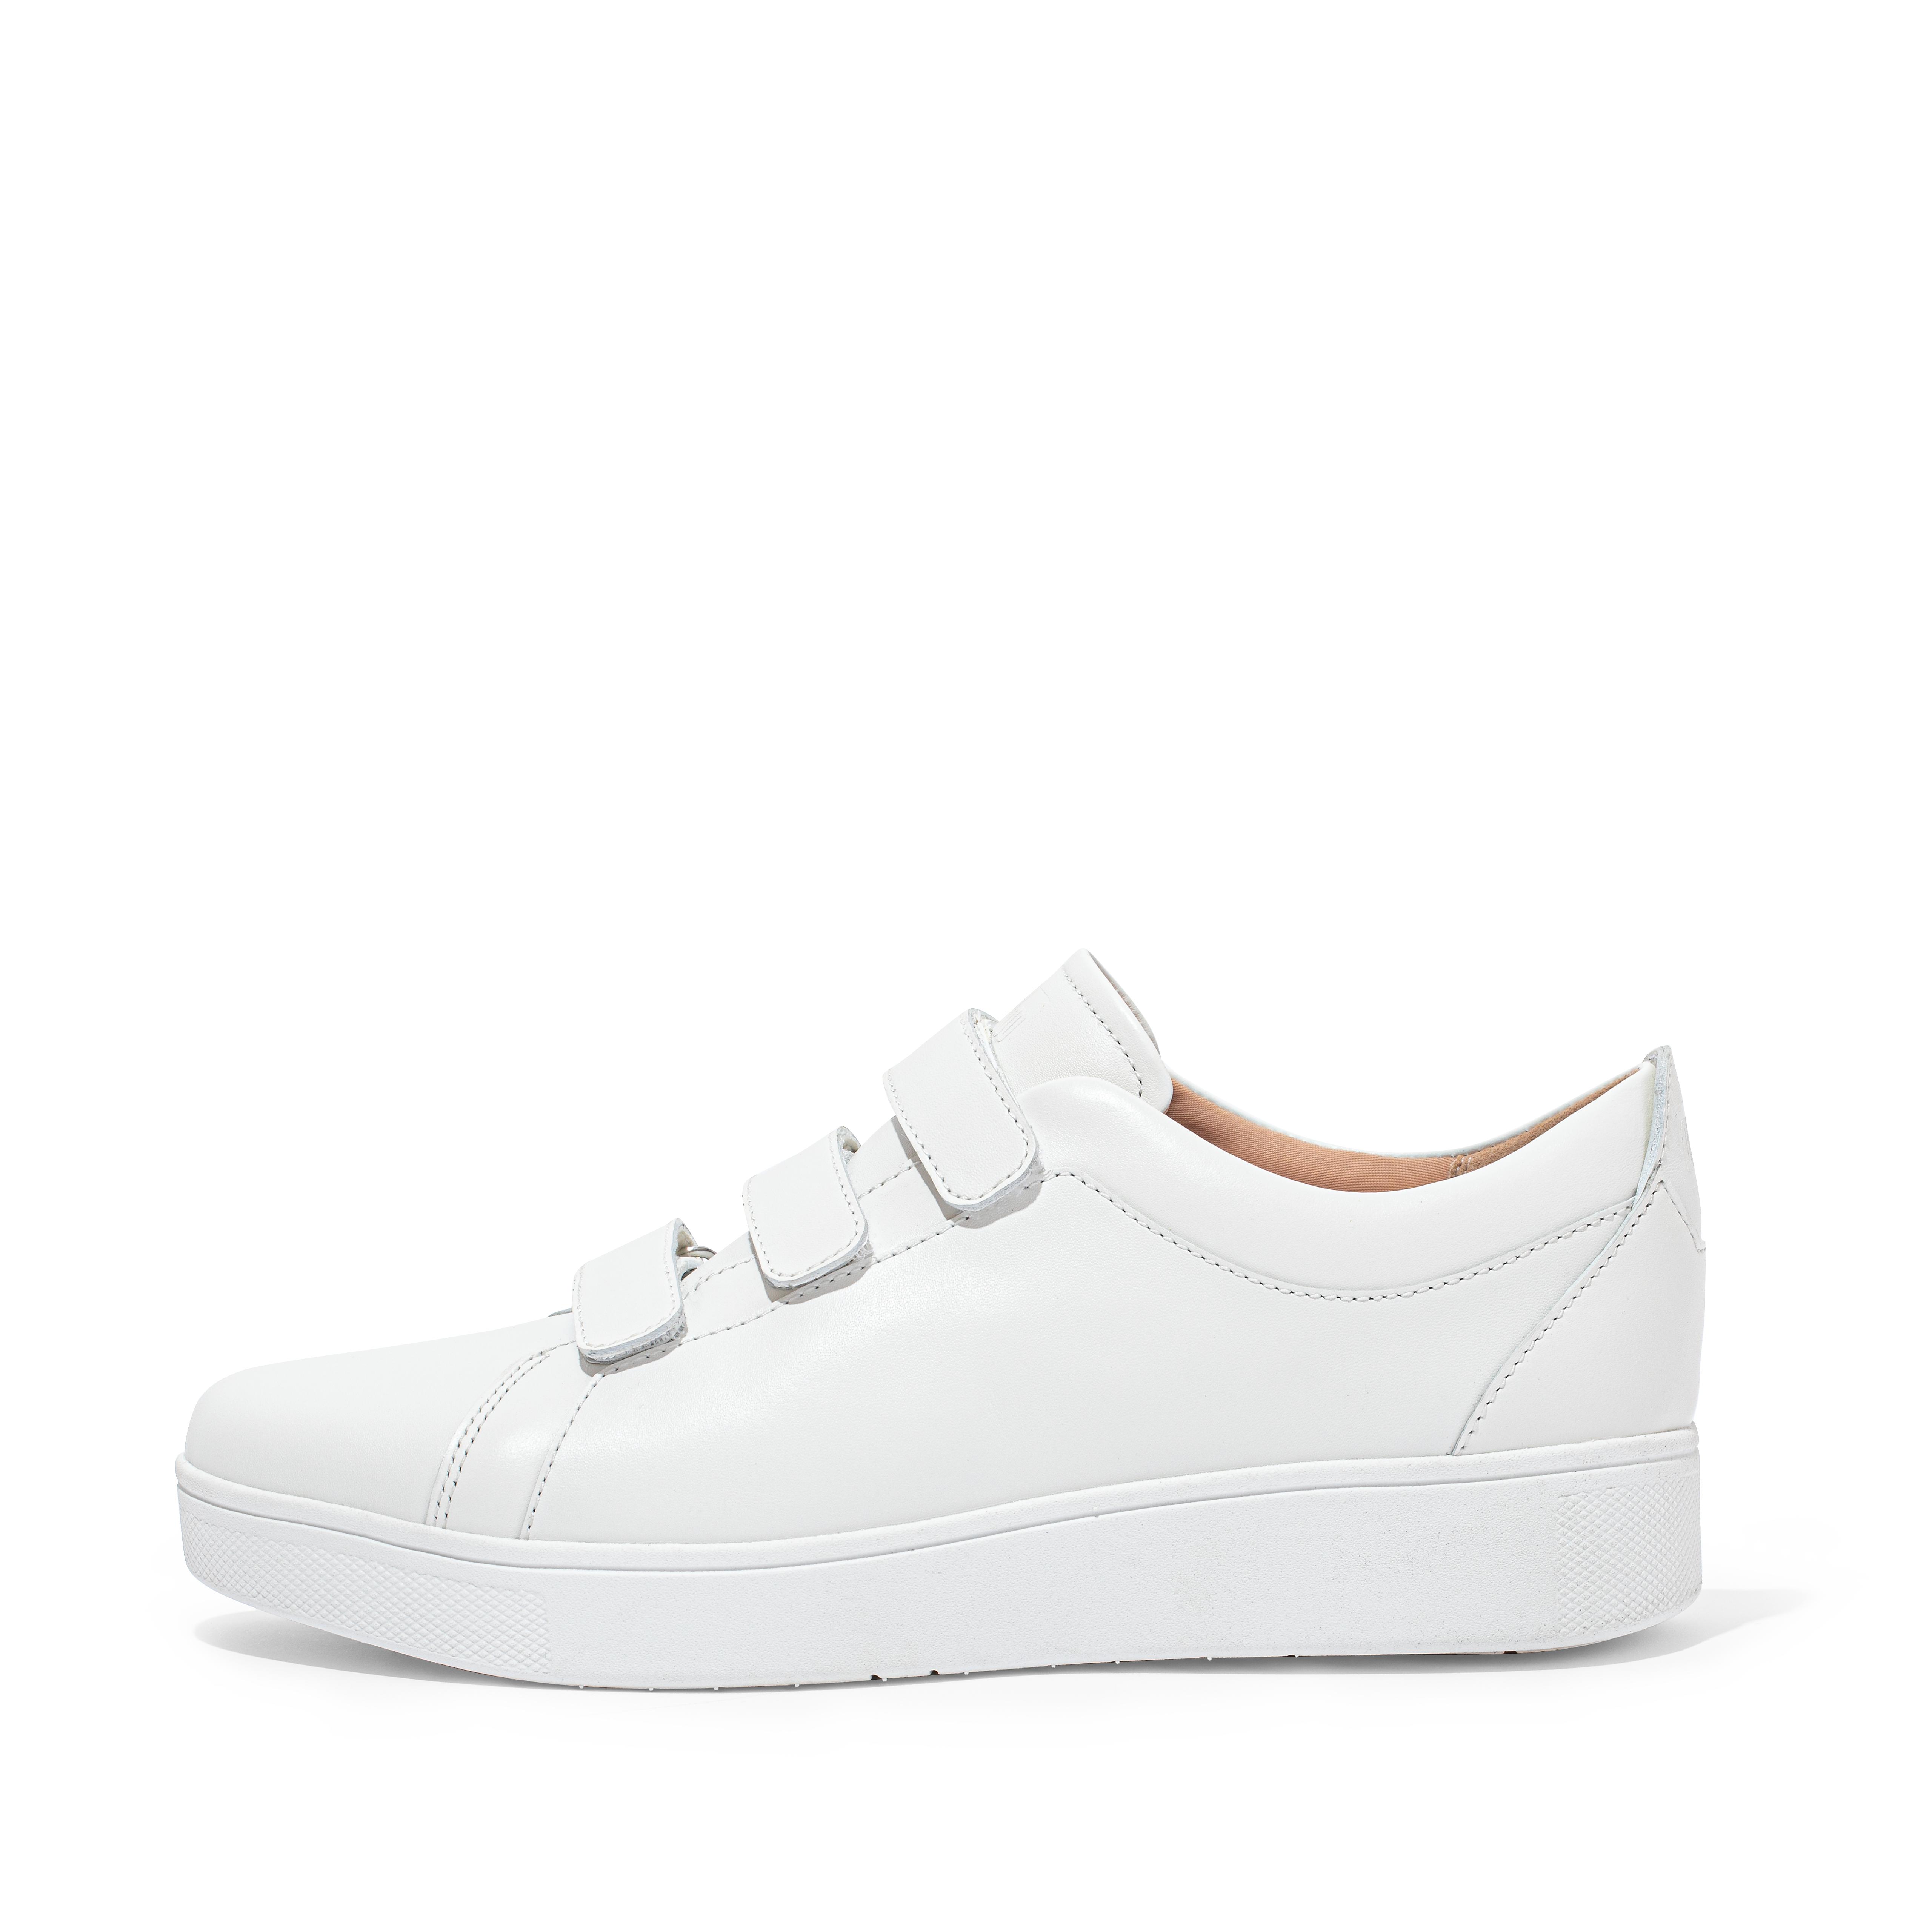 핏플랍 FitFlop RALLY Strap Leather Sneakers,Urban White